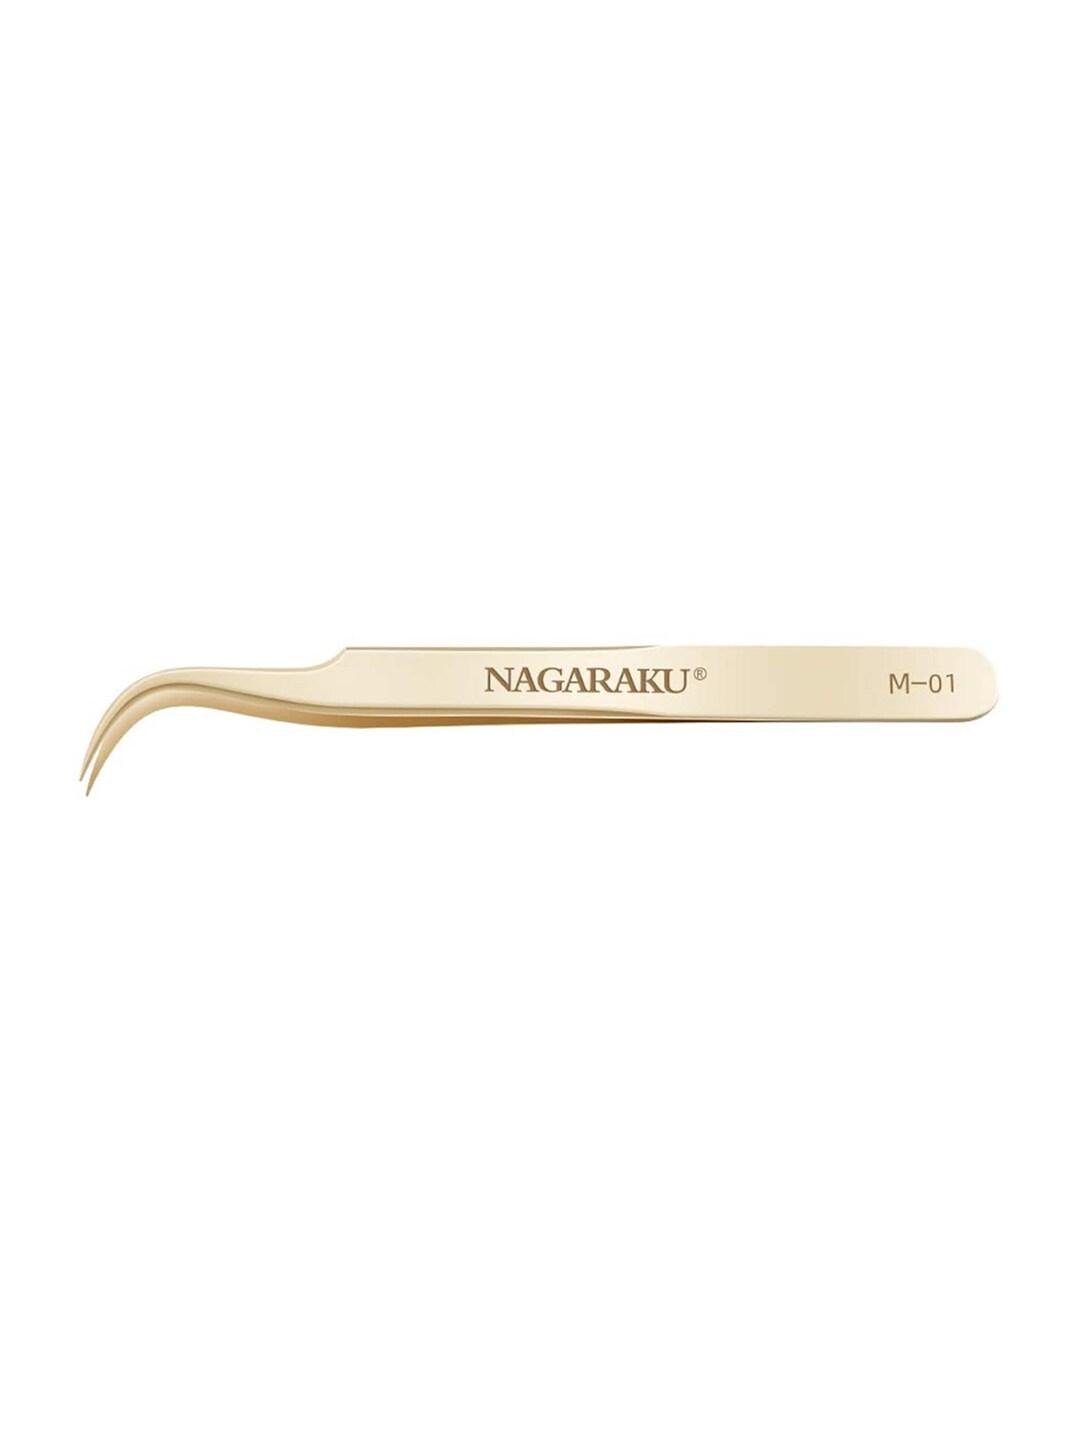 NAGARAKU Gold-Toned Eyelash Extension Stainless Steel Accurate Tweezer - M01